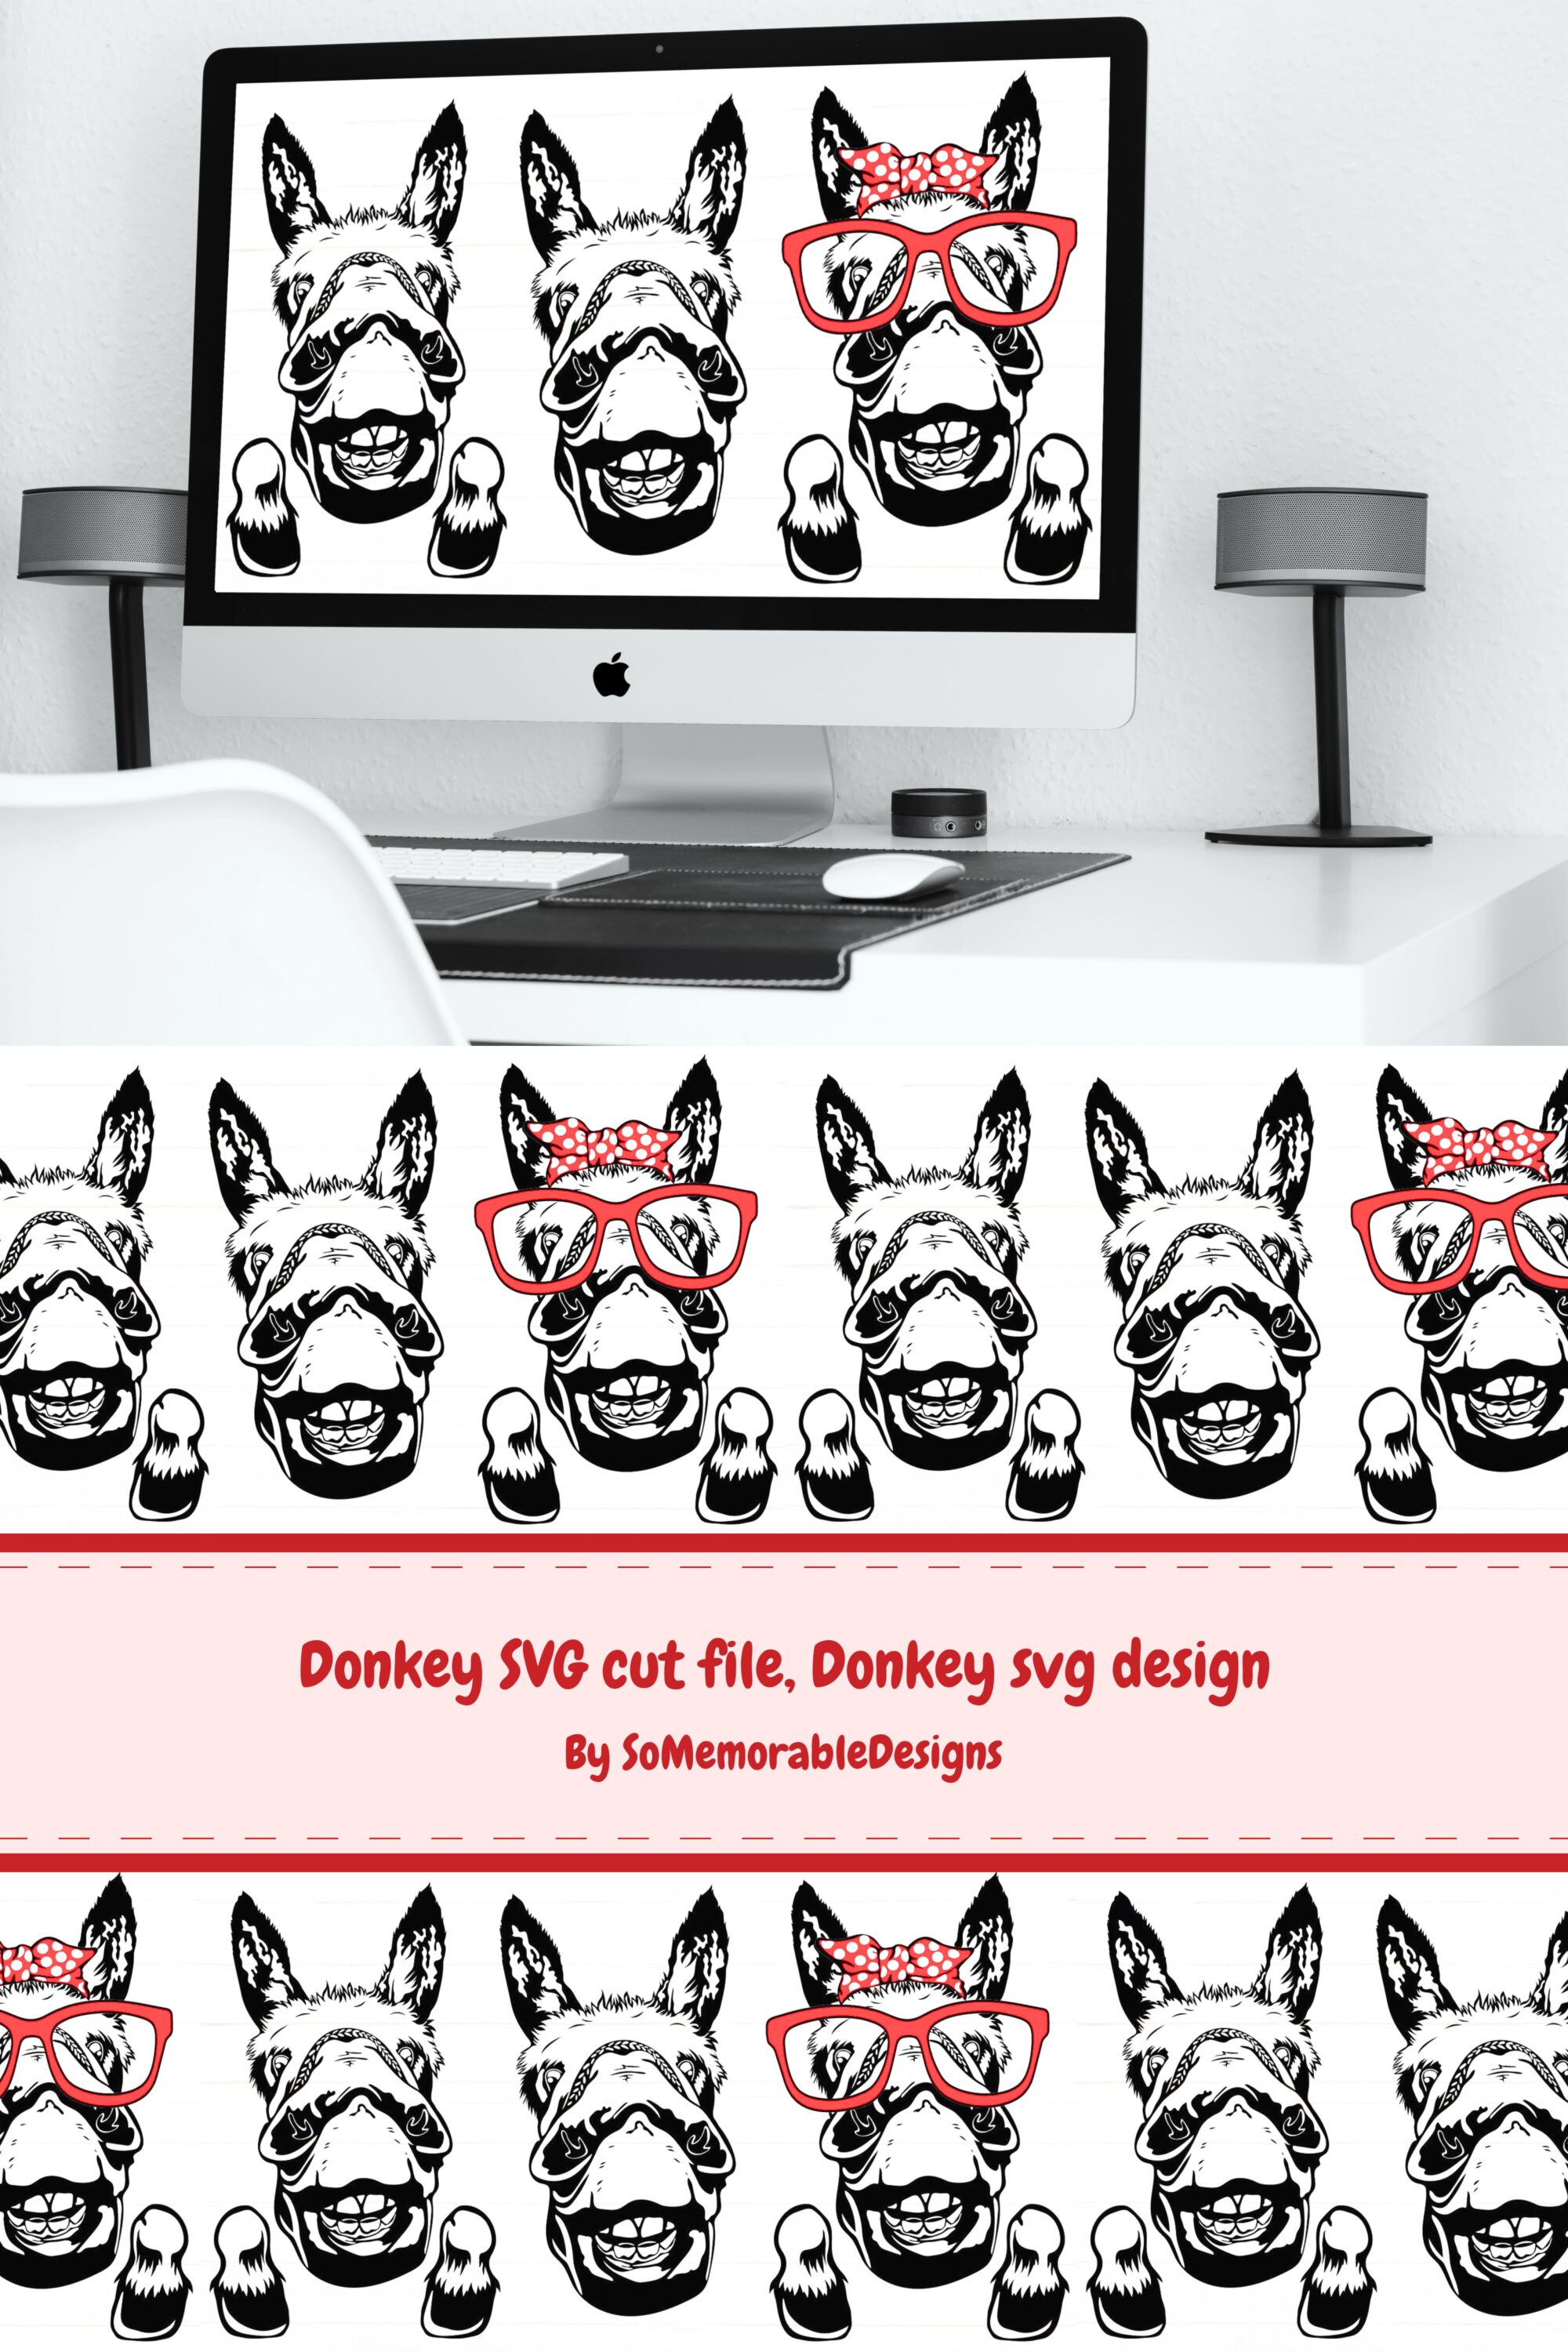 donkey svg cut file donkey svg design 03 522